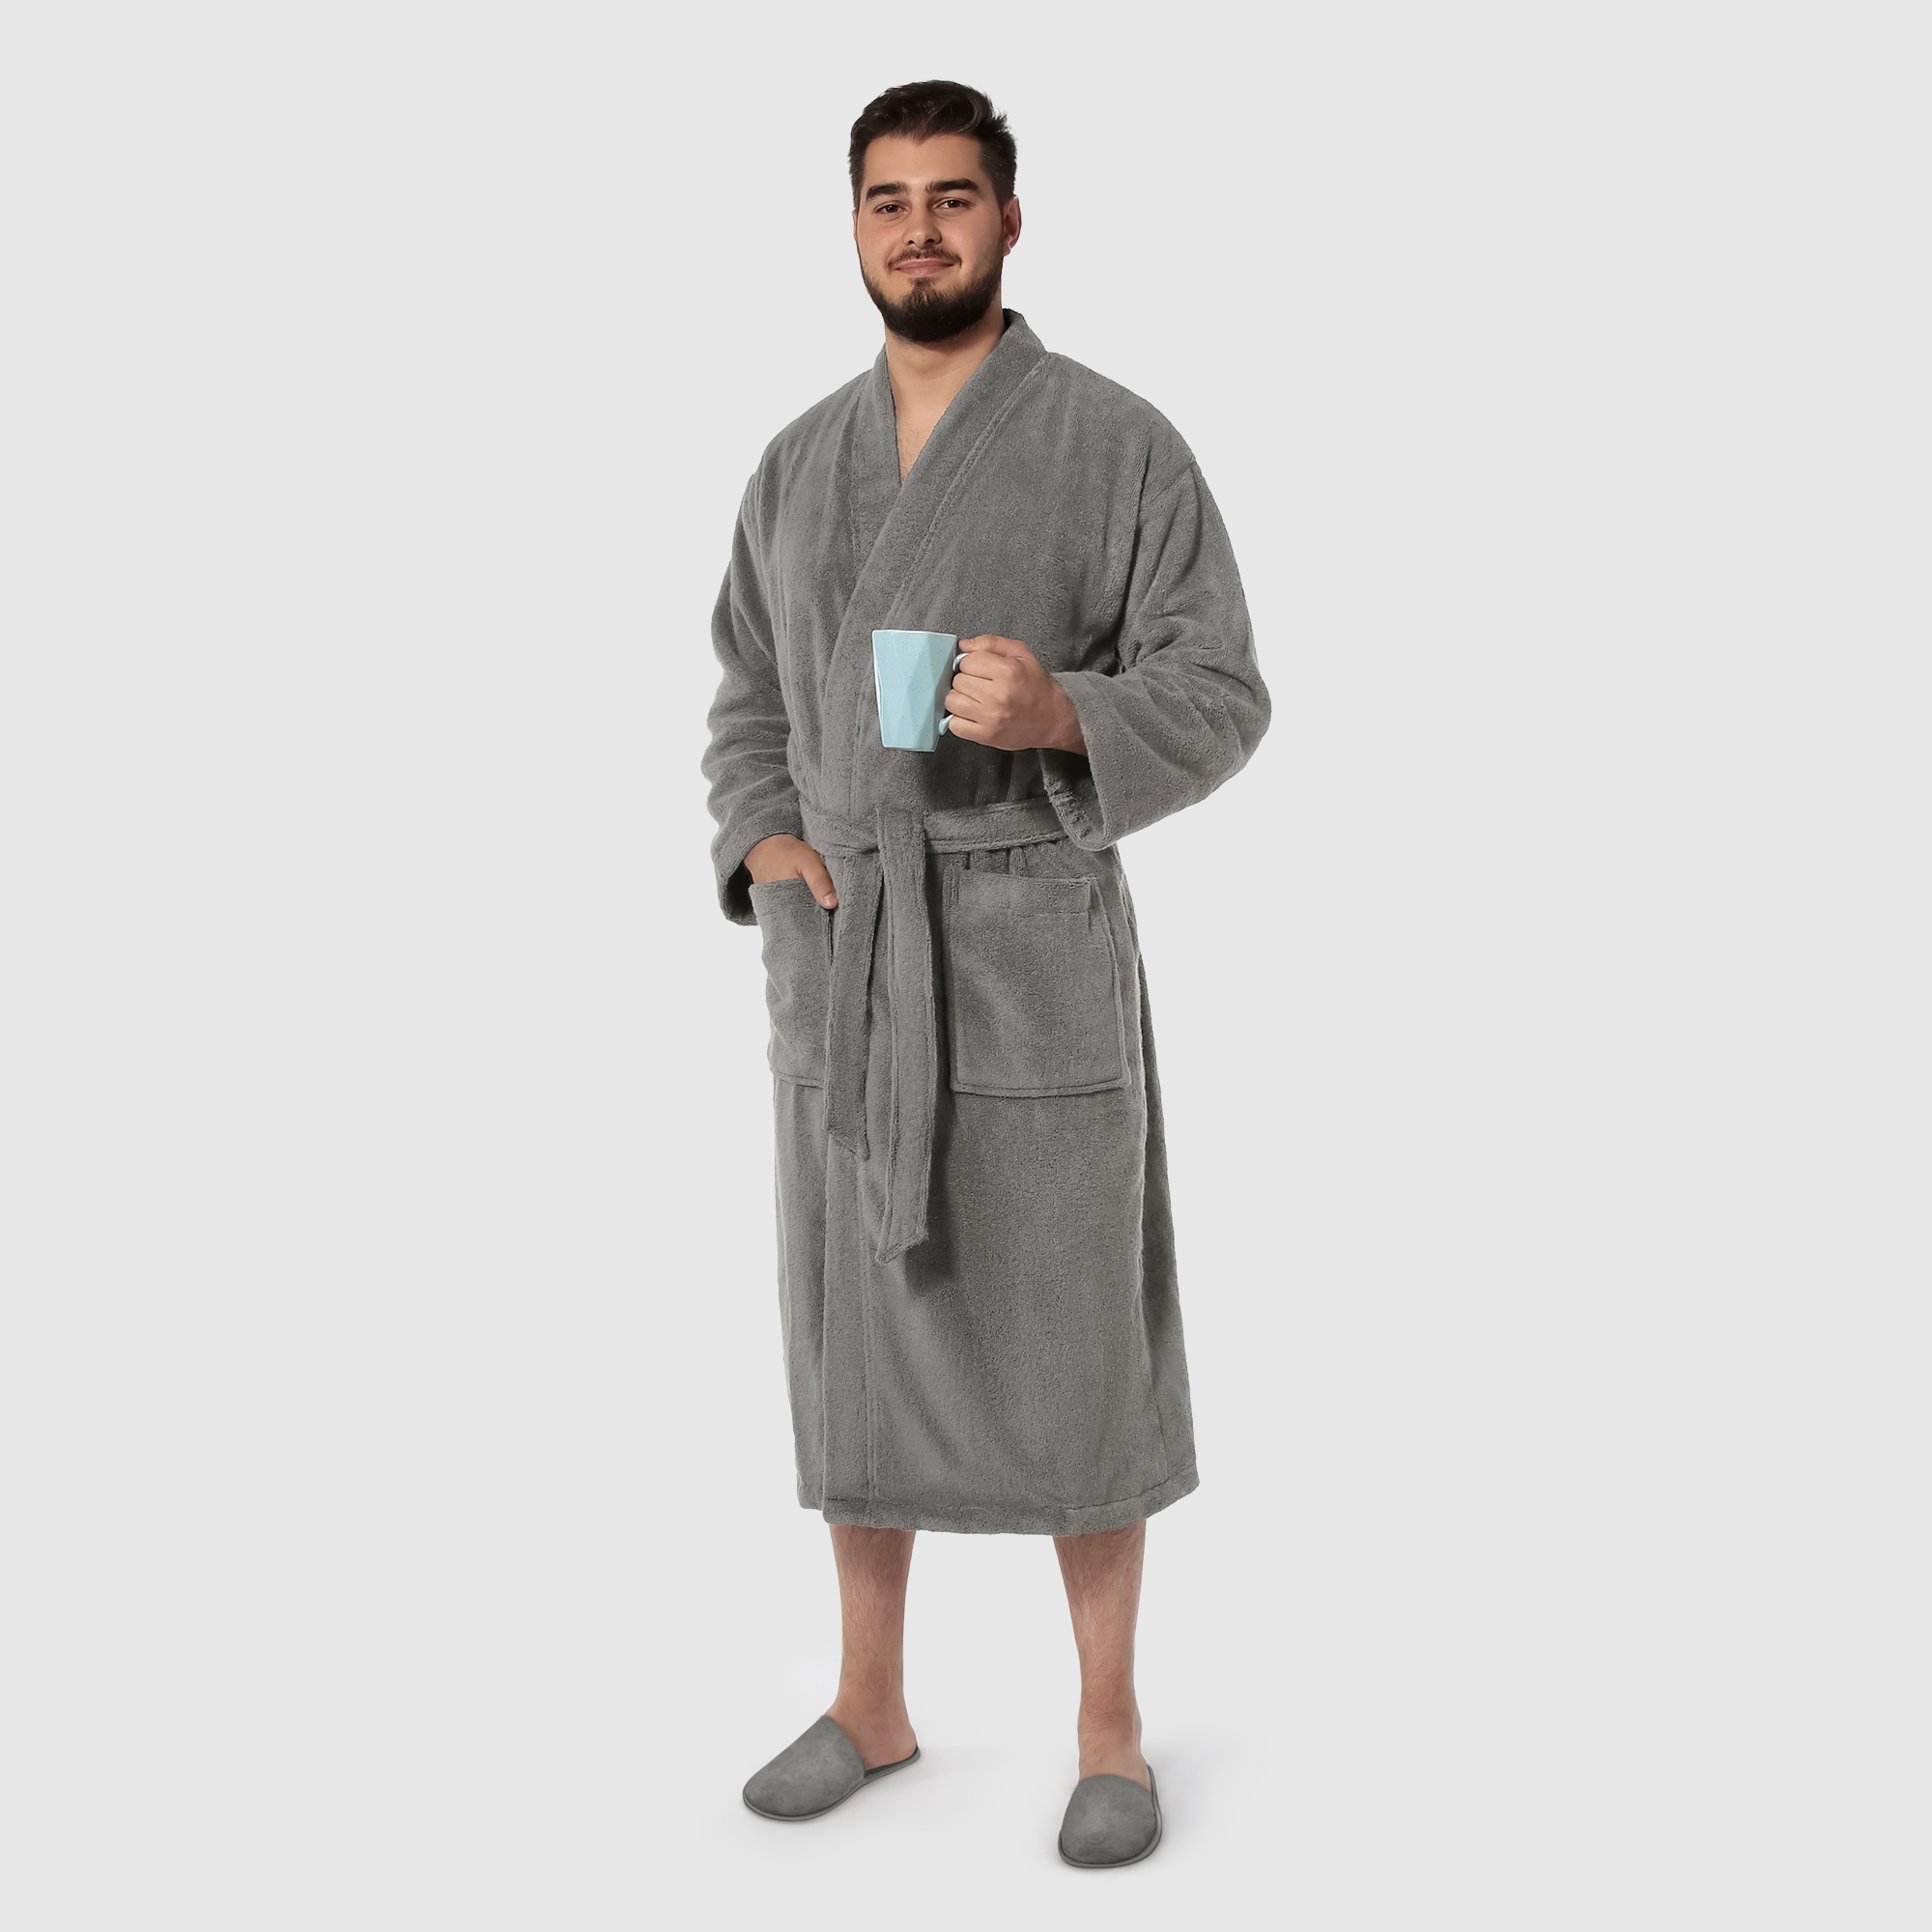 Мужской халат Maisonette Parla светло-серый XL халат мужской asil sauna brown xl вафельный с капюшоном